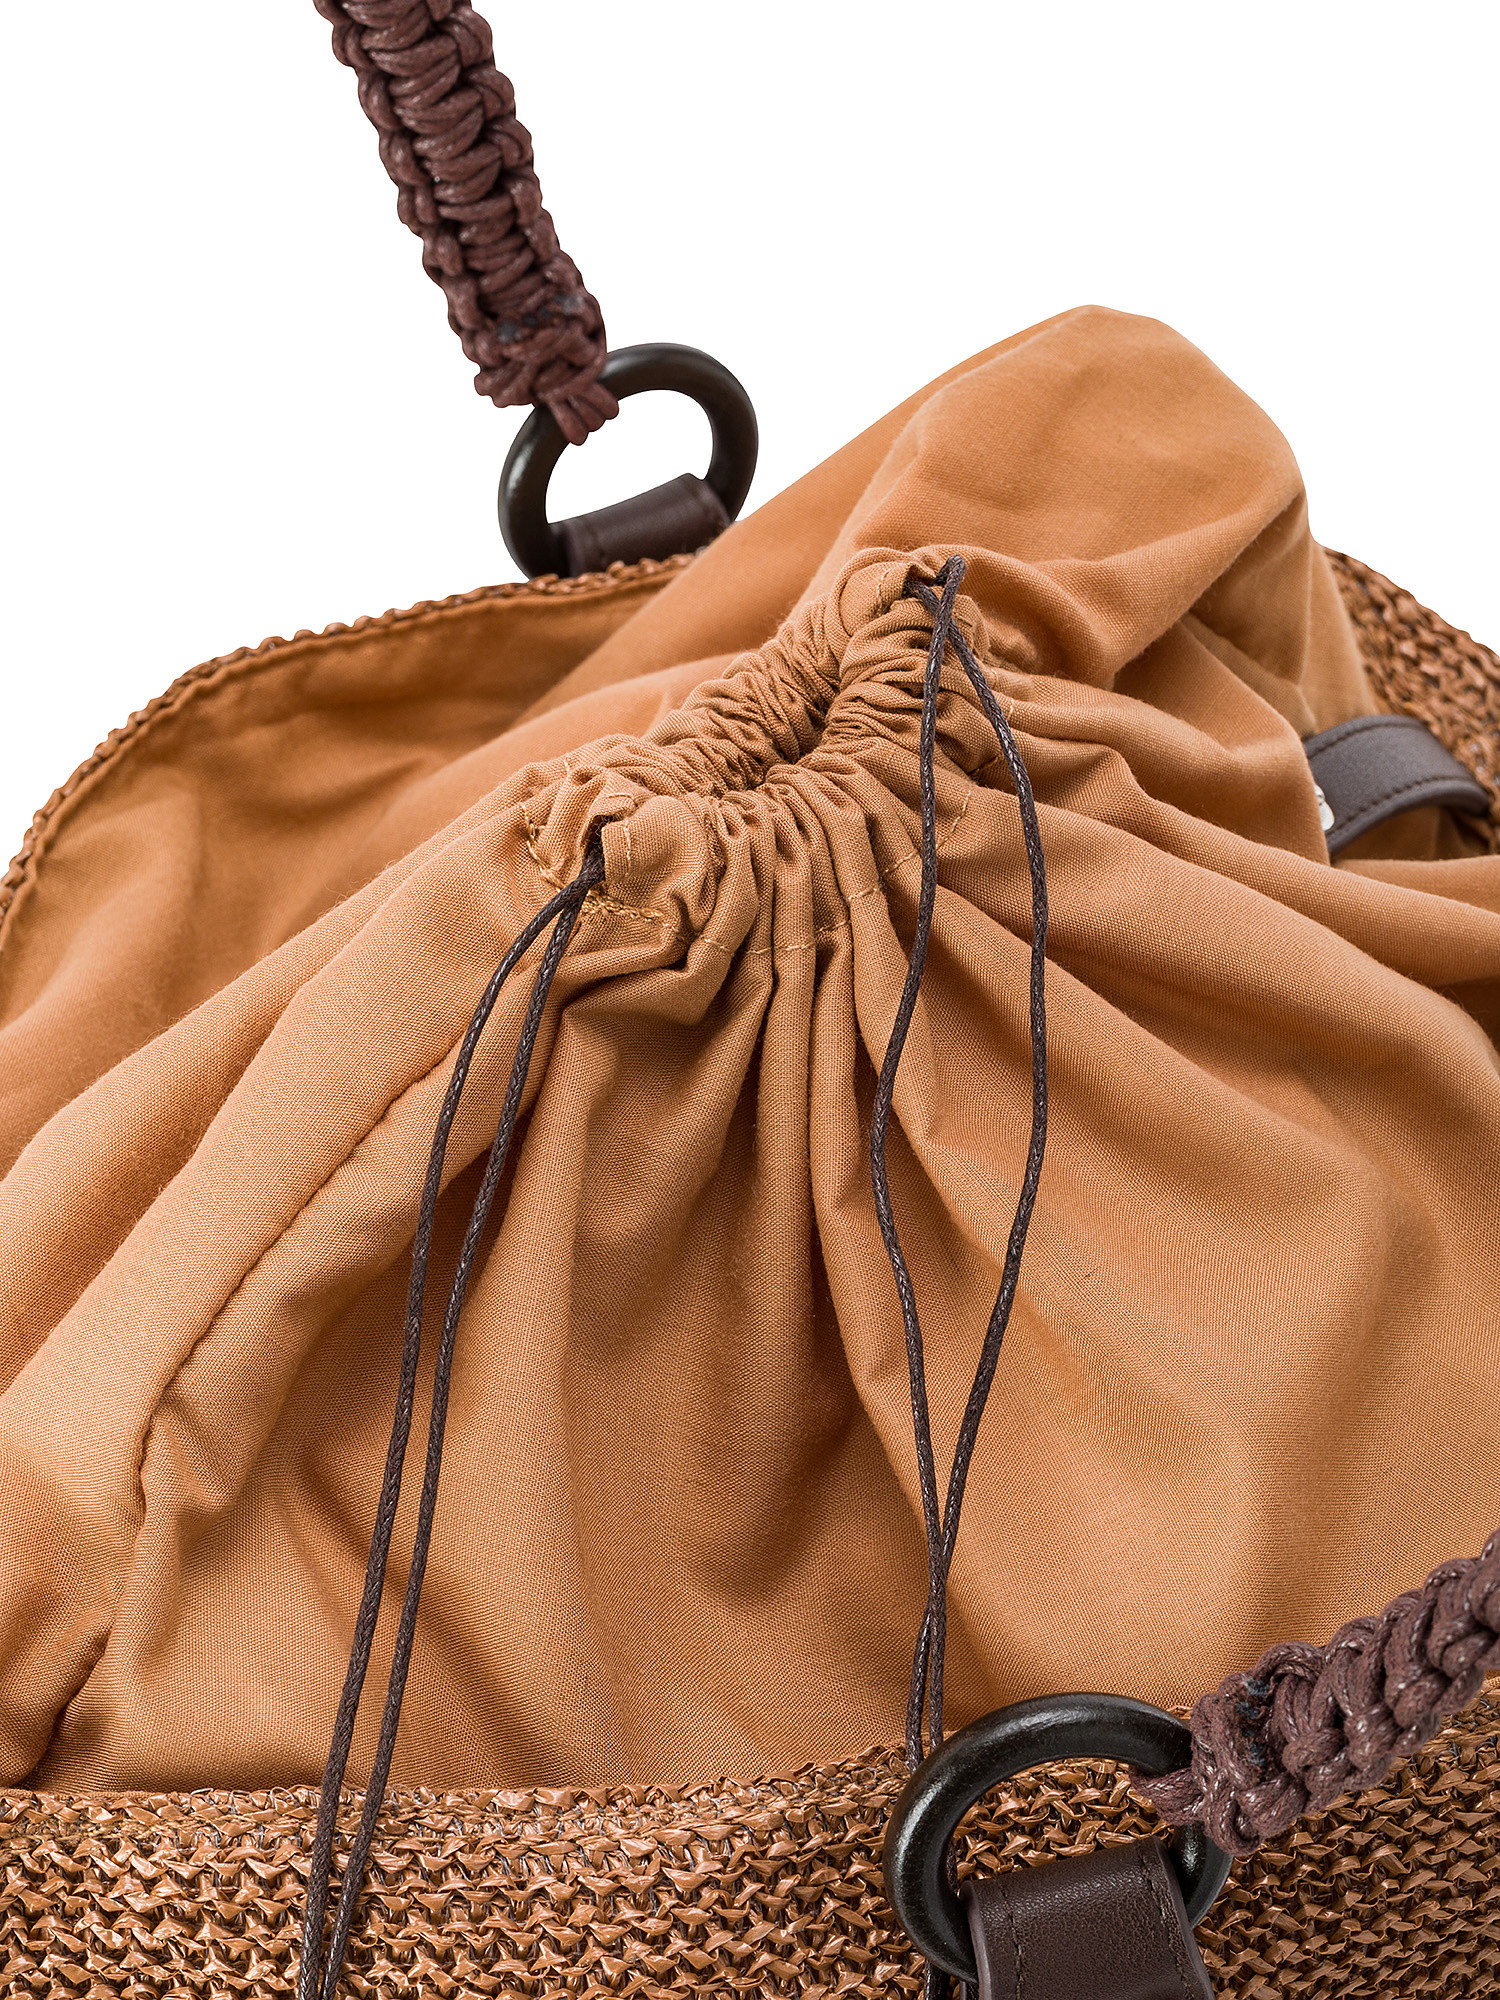 Koan - Shopping bag, Brown, large image number 2